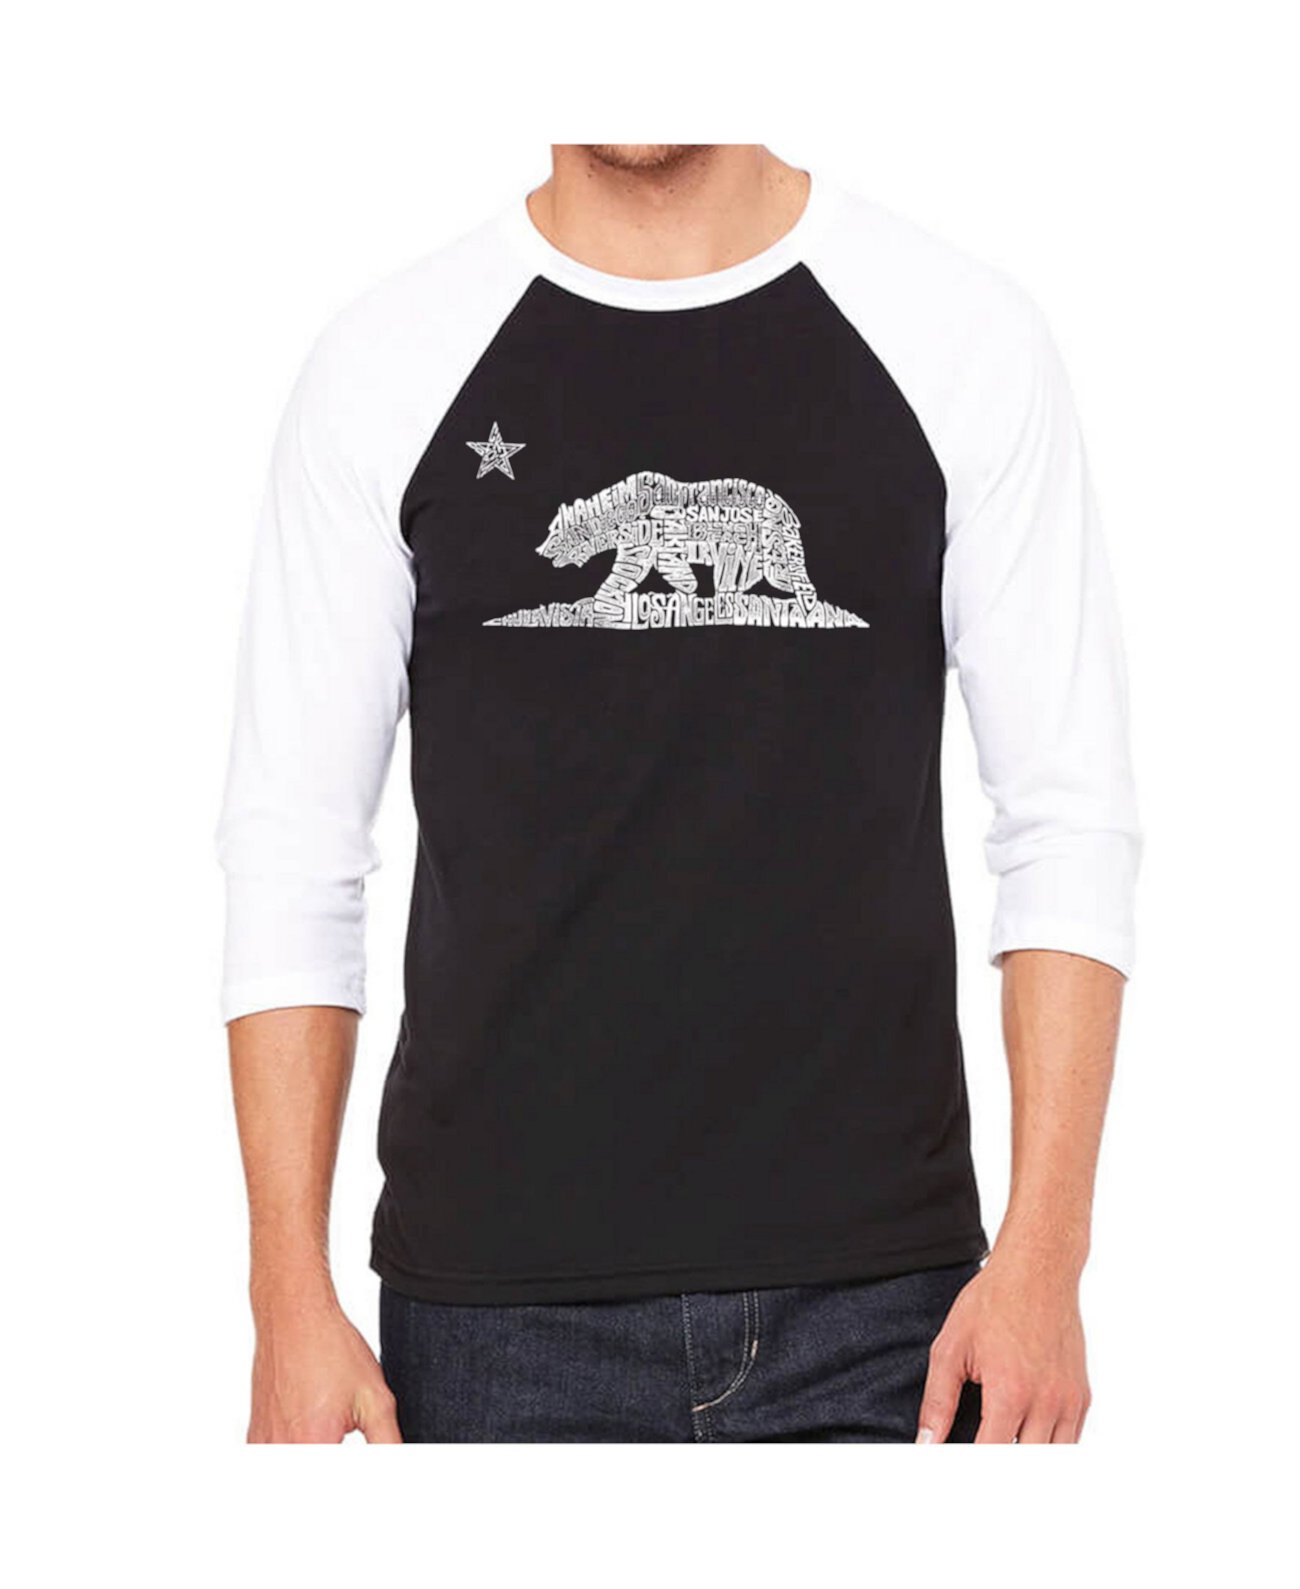 Мужская футболка с регланом и надписью Word Art California Bear LA Pop Art